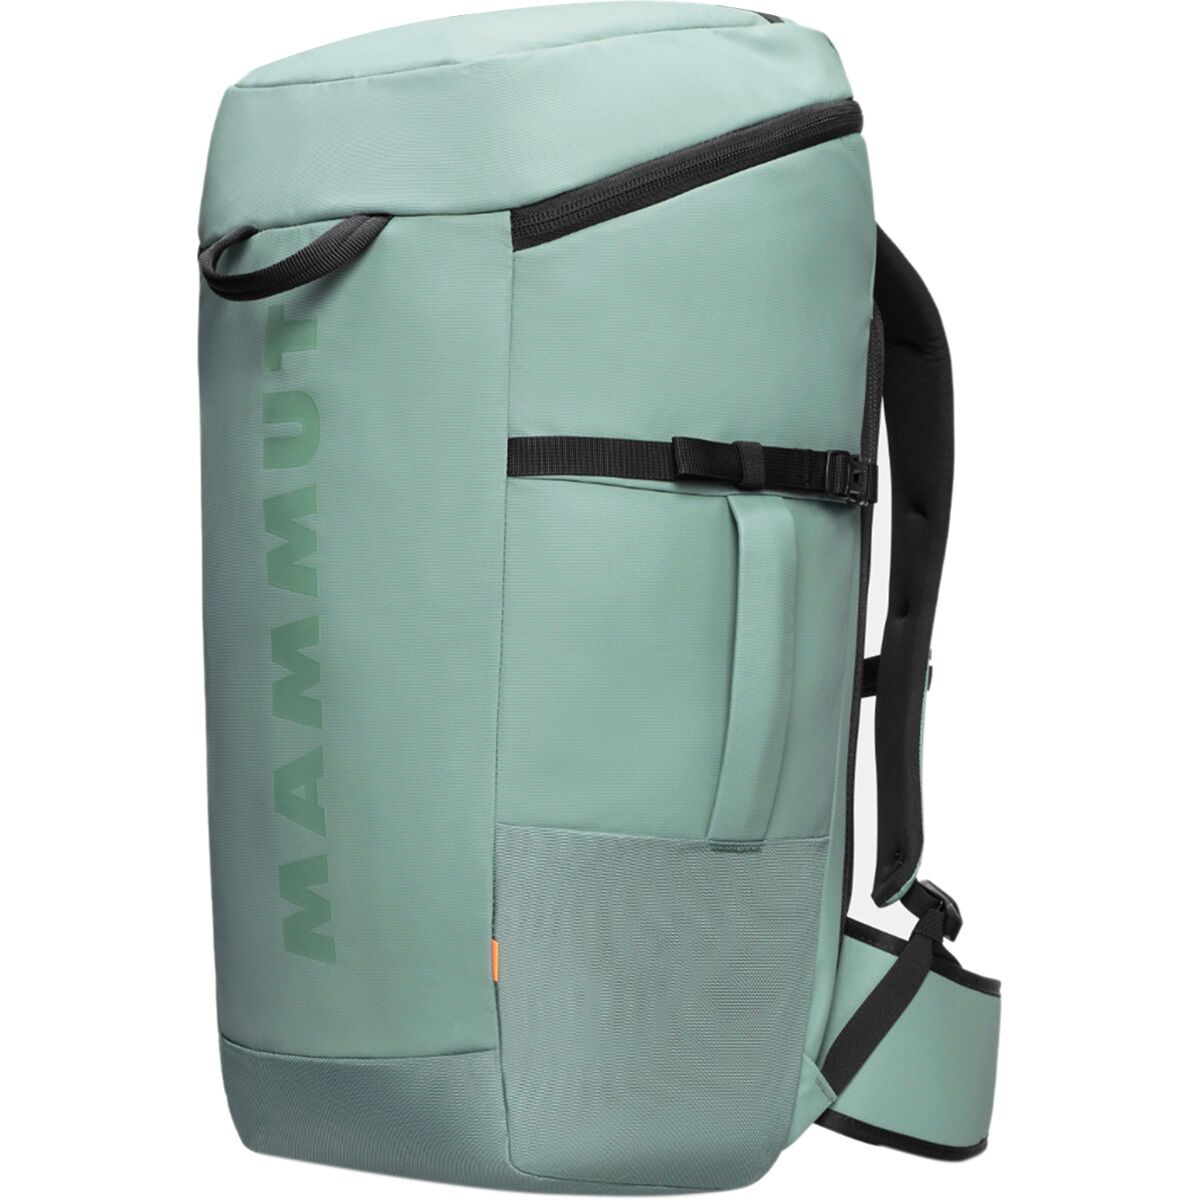 Mammut Neon Gear 45L Backpack